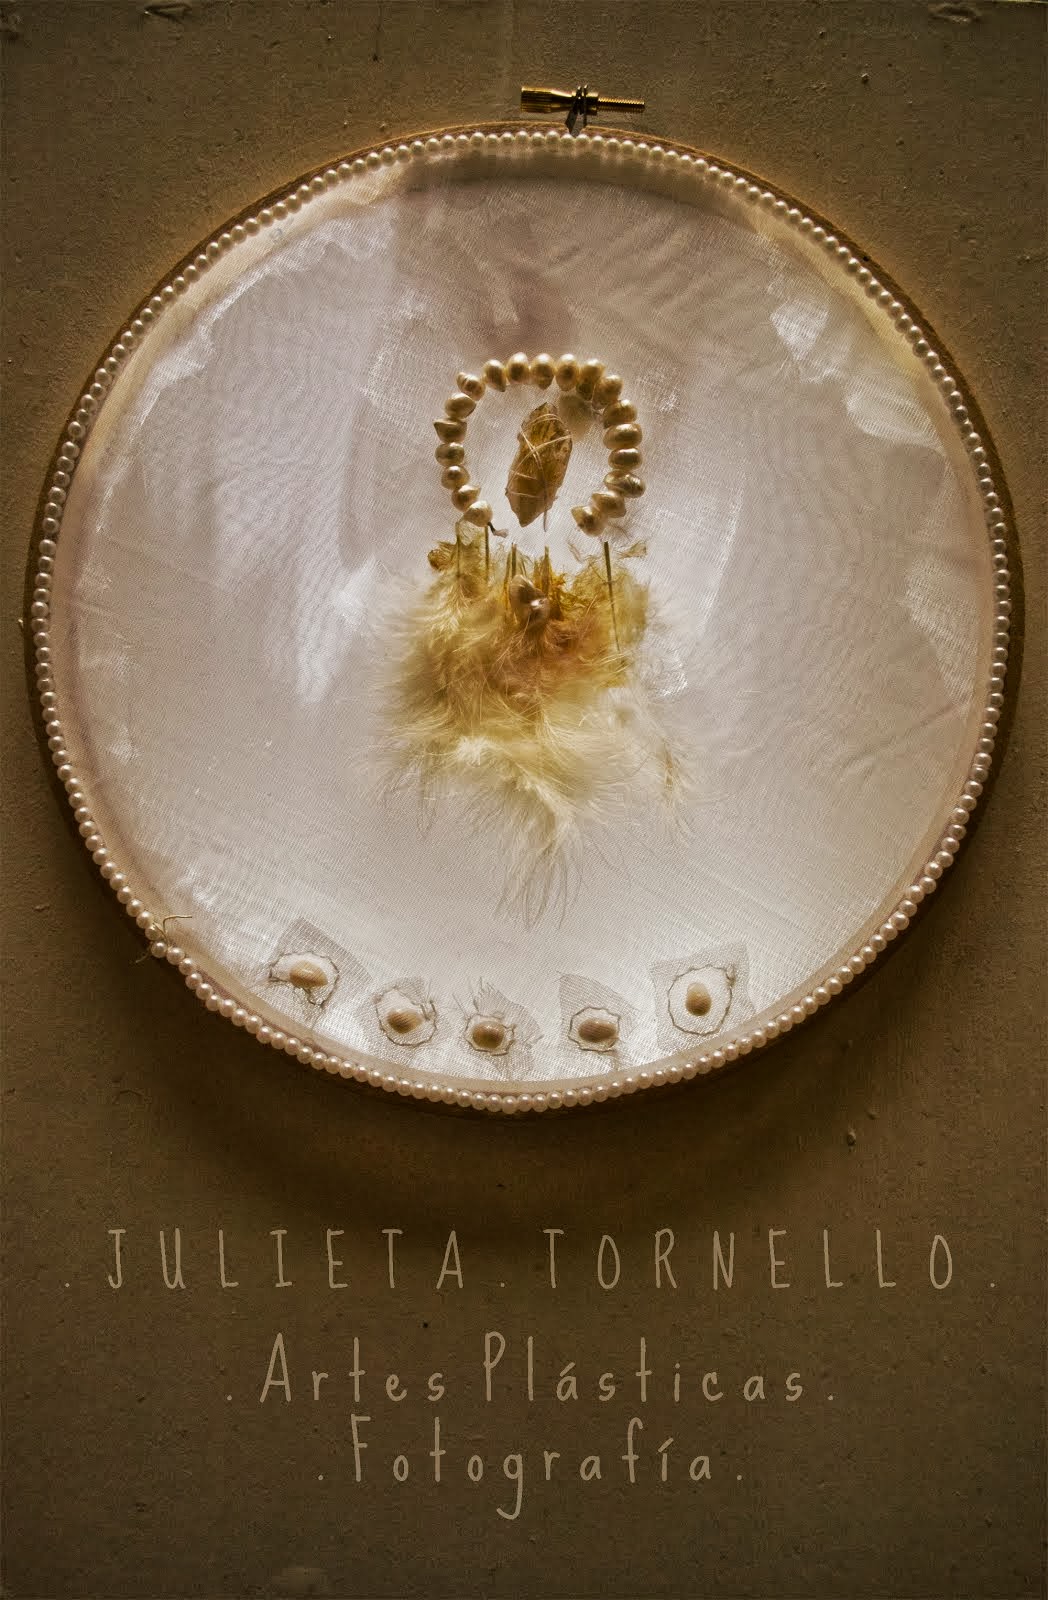 Julieta Tornello Fotografía y Artes Plásticas